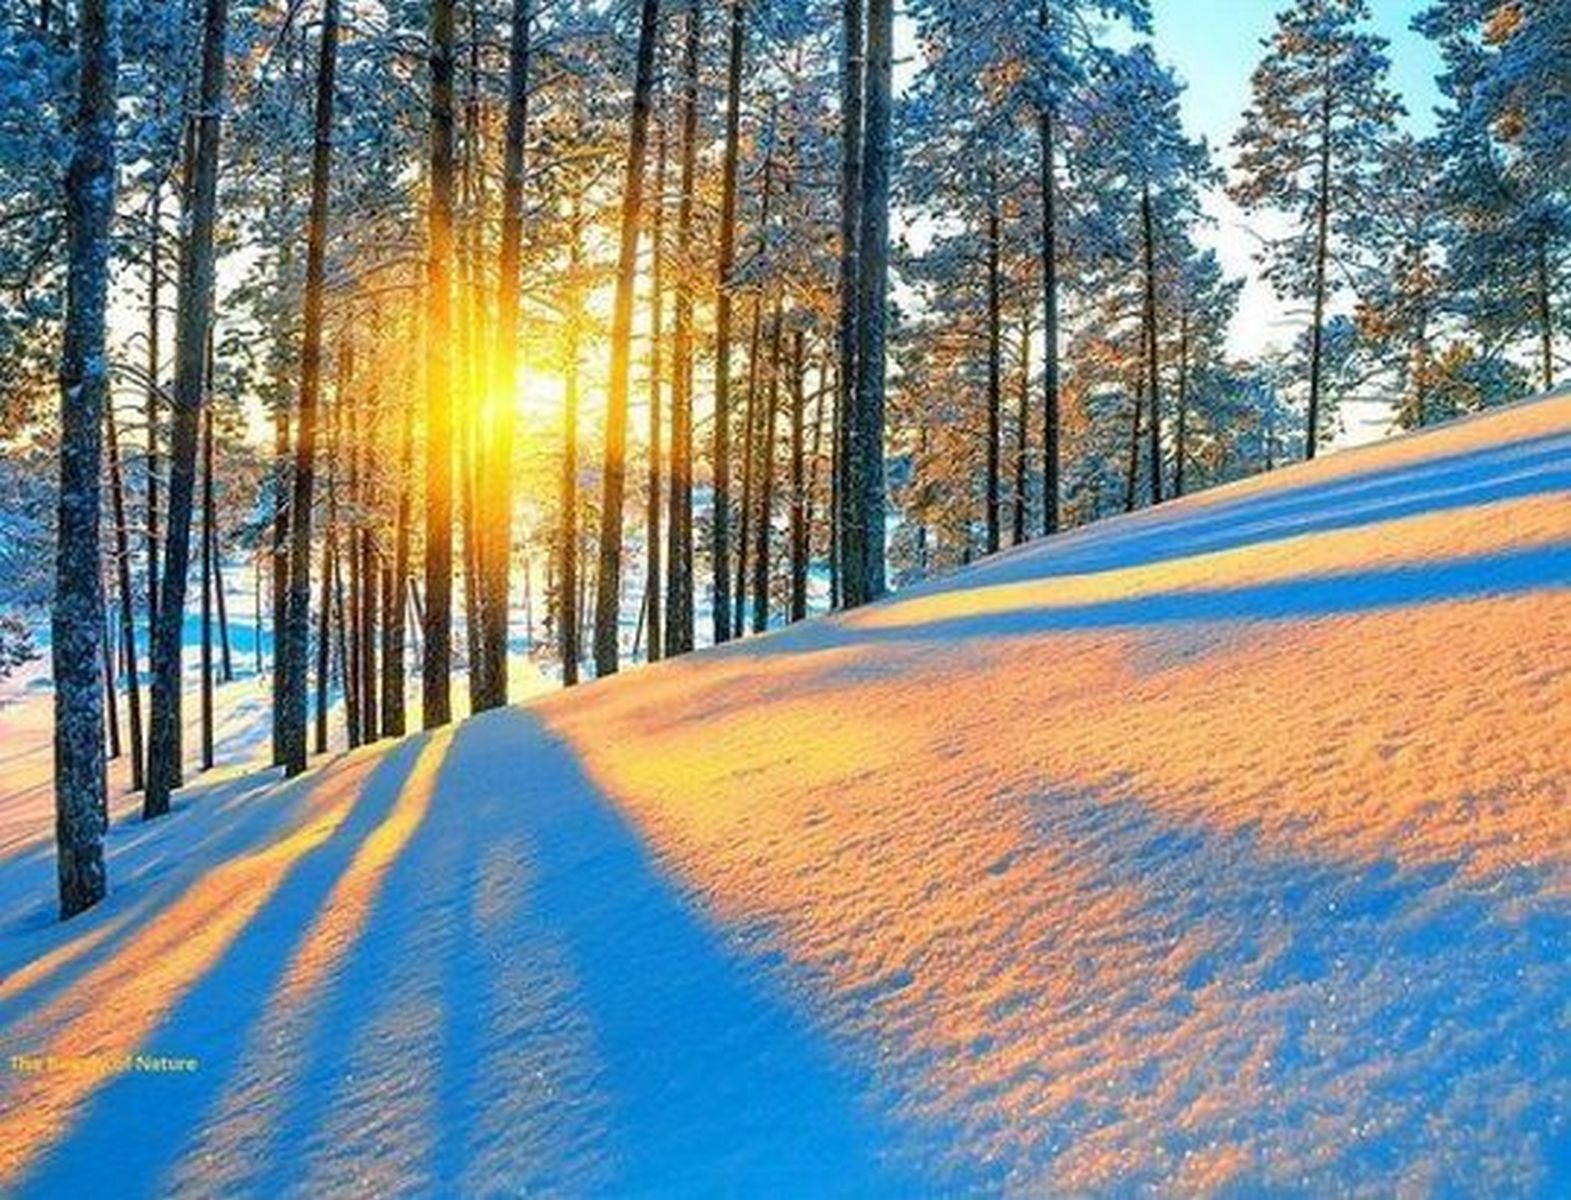 Снова снег синеет в поле...Георгий Иванов.